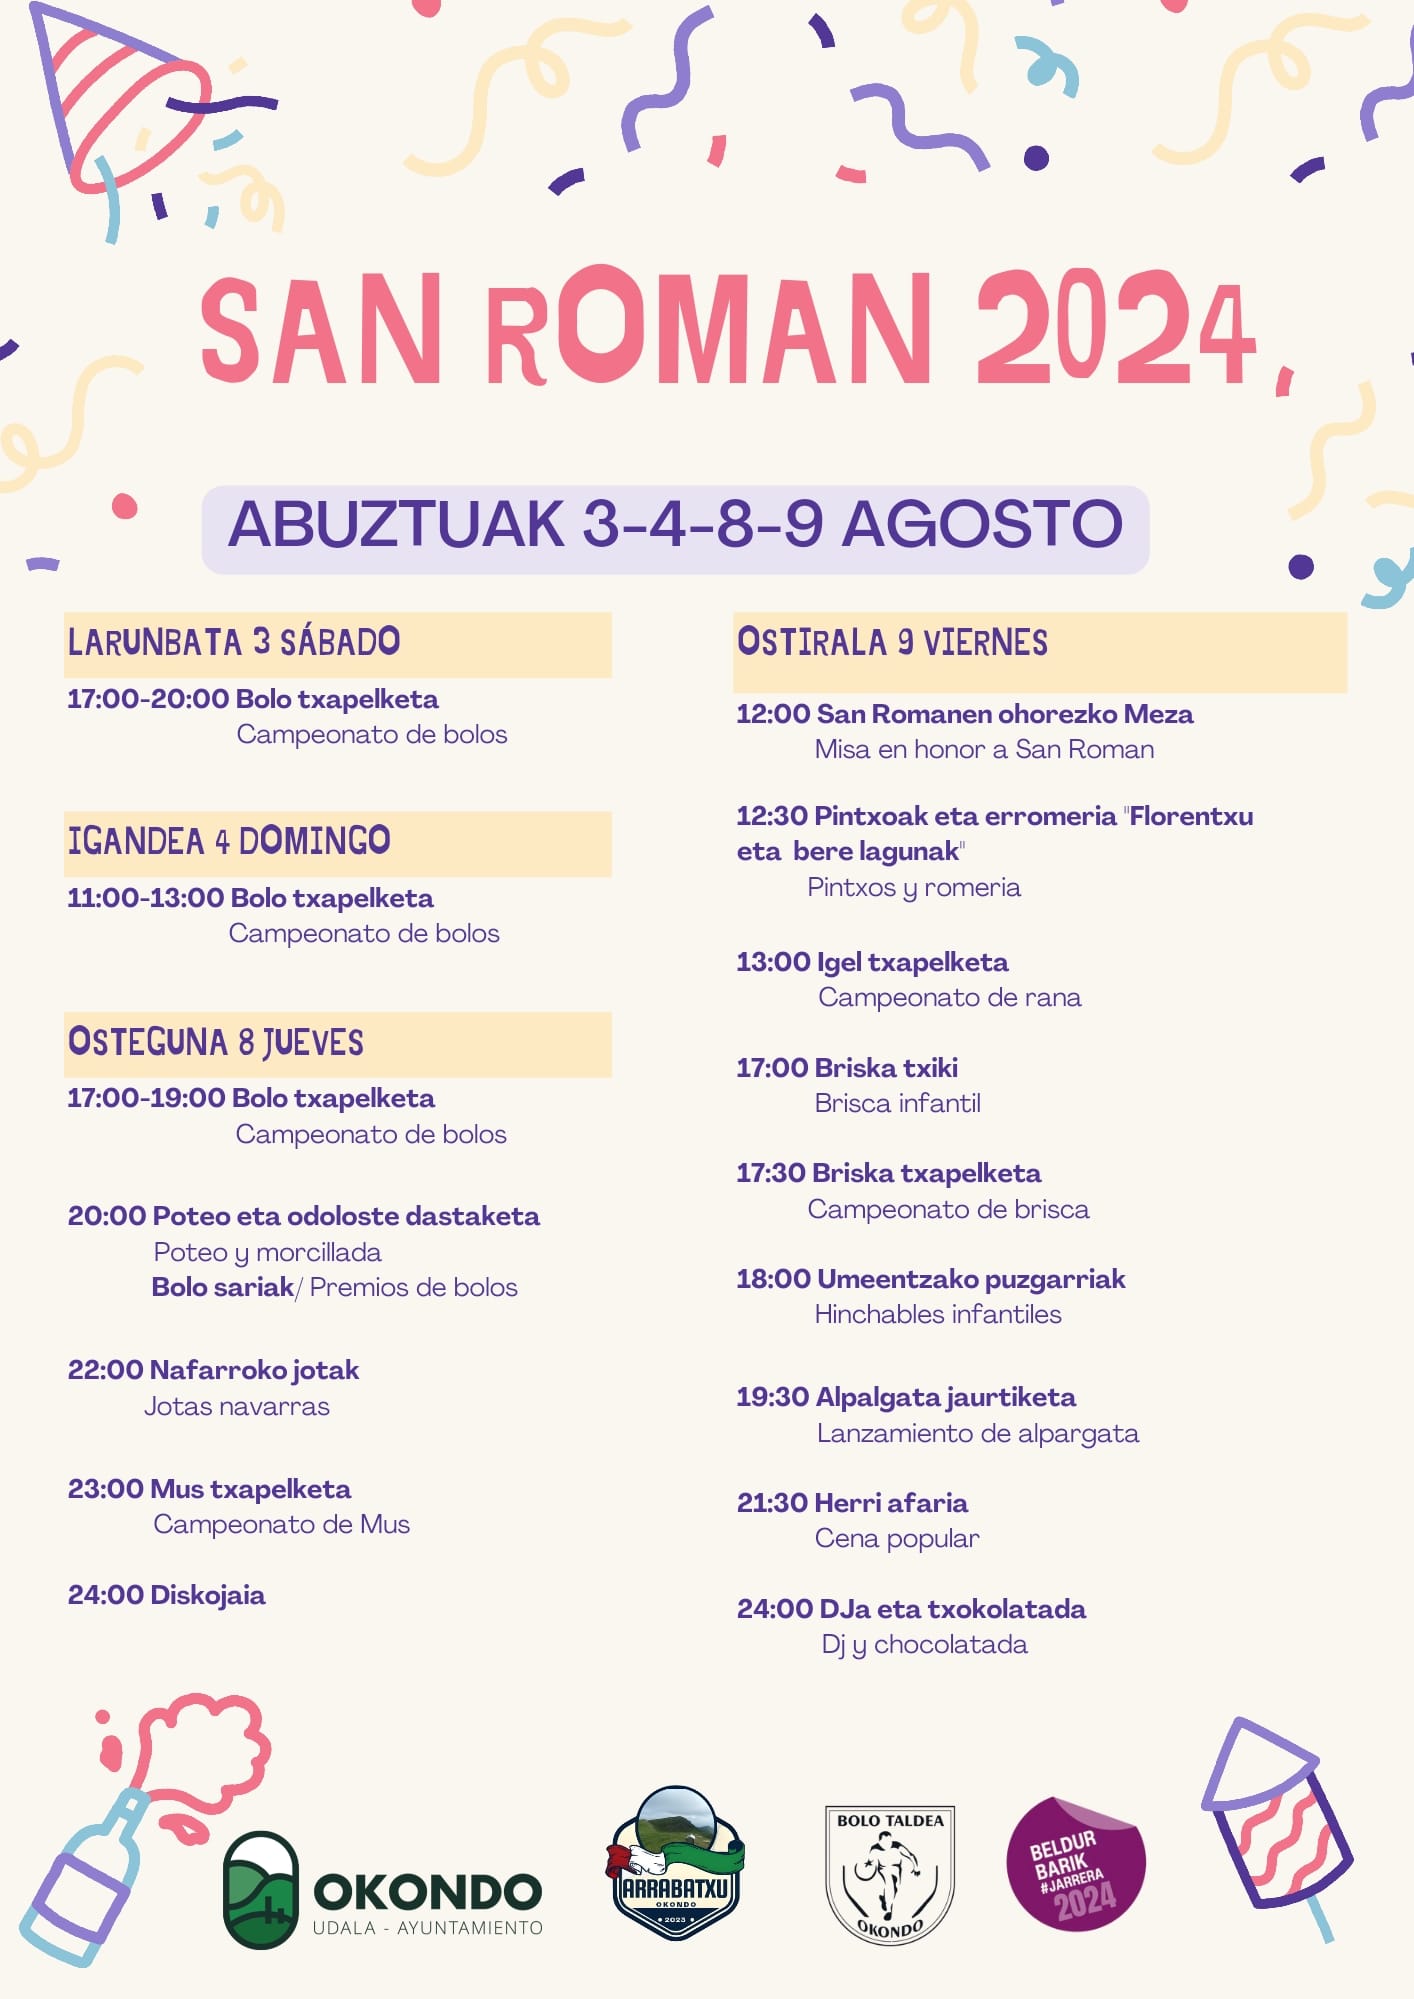 San Roman 2024